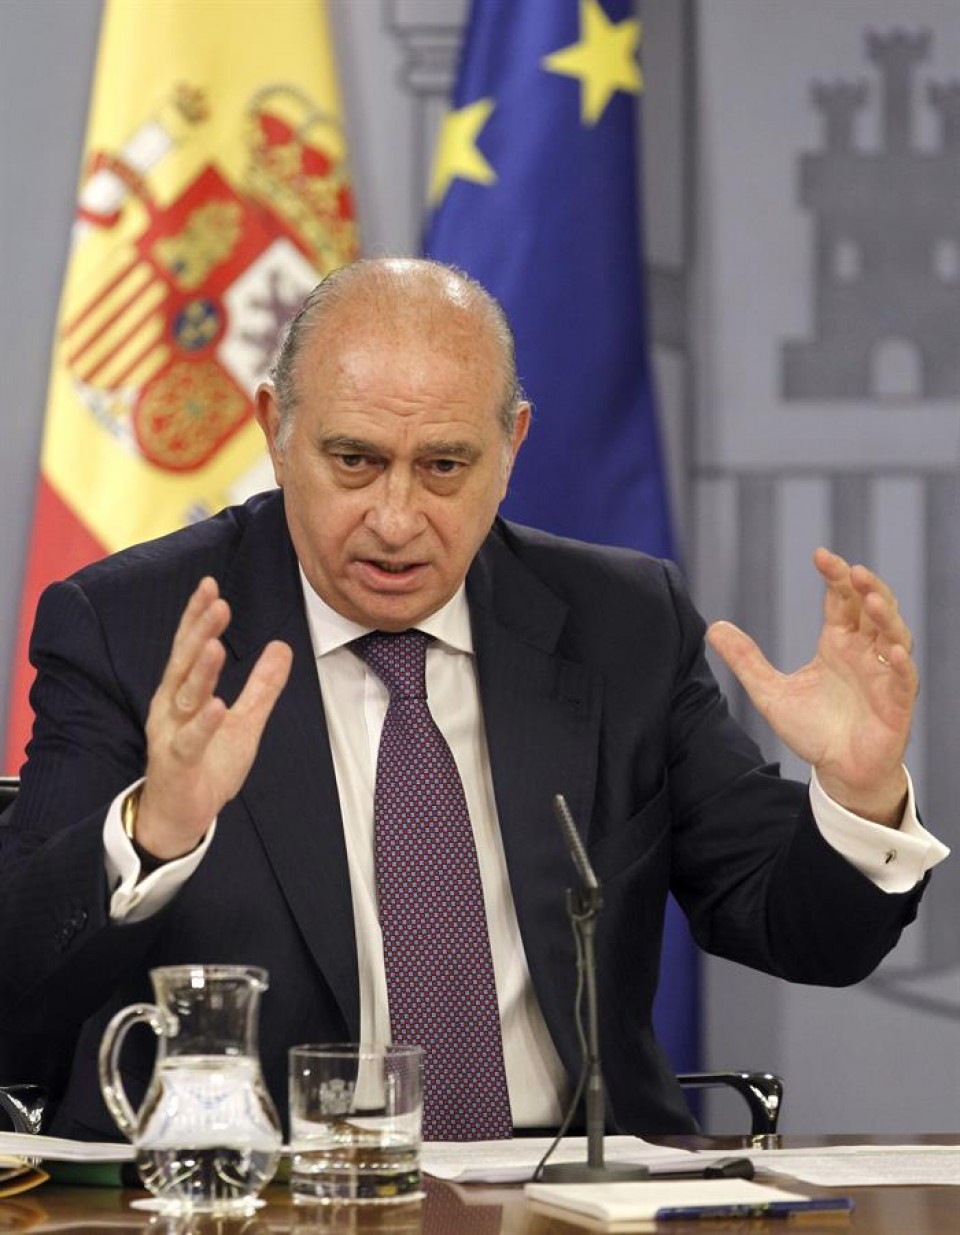 El ministro del Interior, Jorge Fernández Díaz. EFE